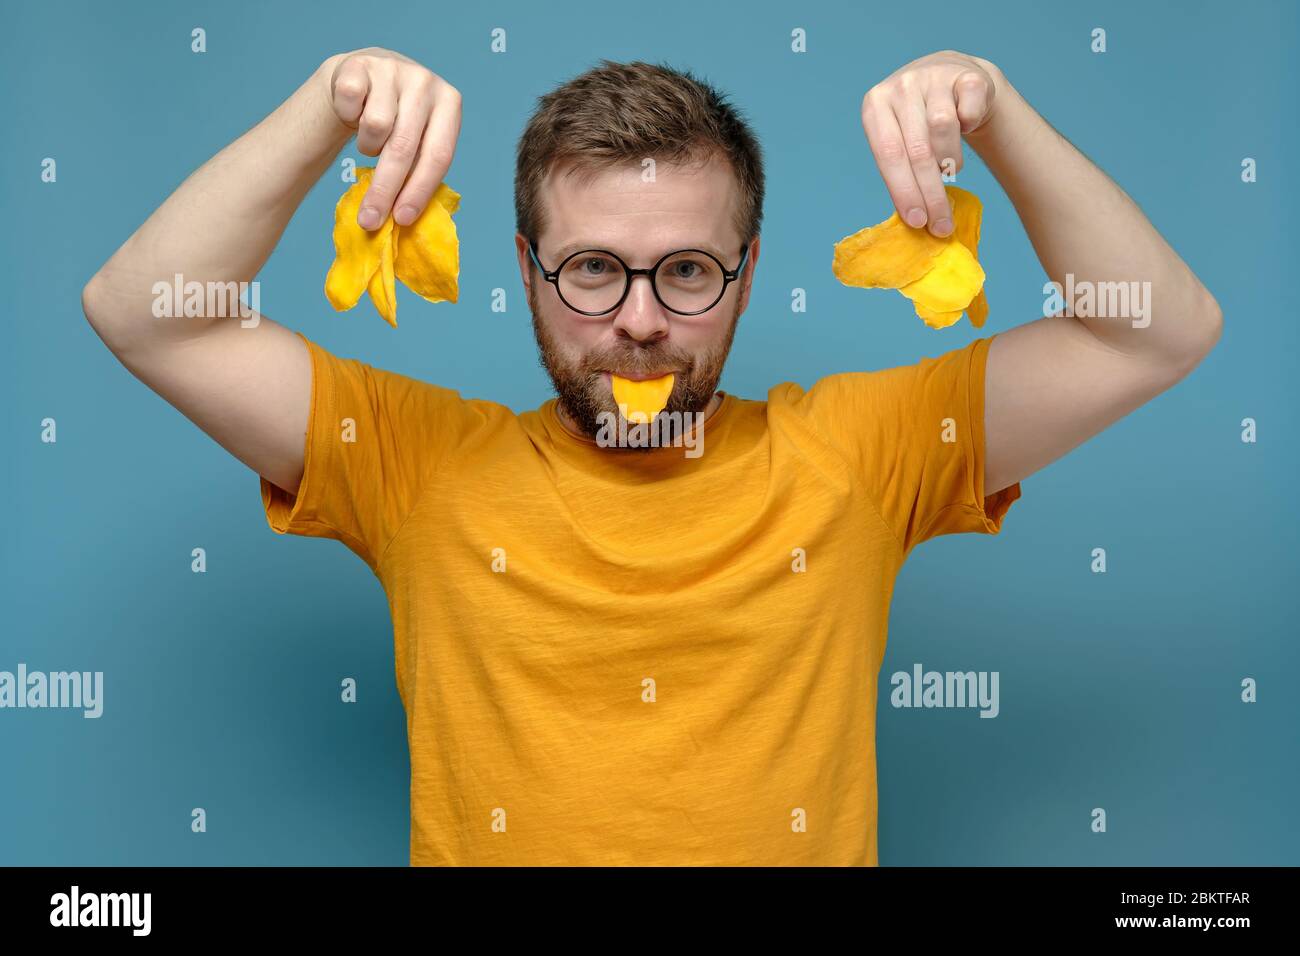 Verspielter, schelmiger Mann in runden Gläsern und einem gelben T-Shirt hält trockene Mango in Mund und Händen auf blauem Hintergrund. Stockfoto